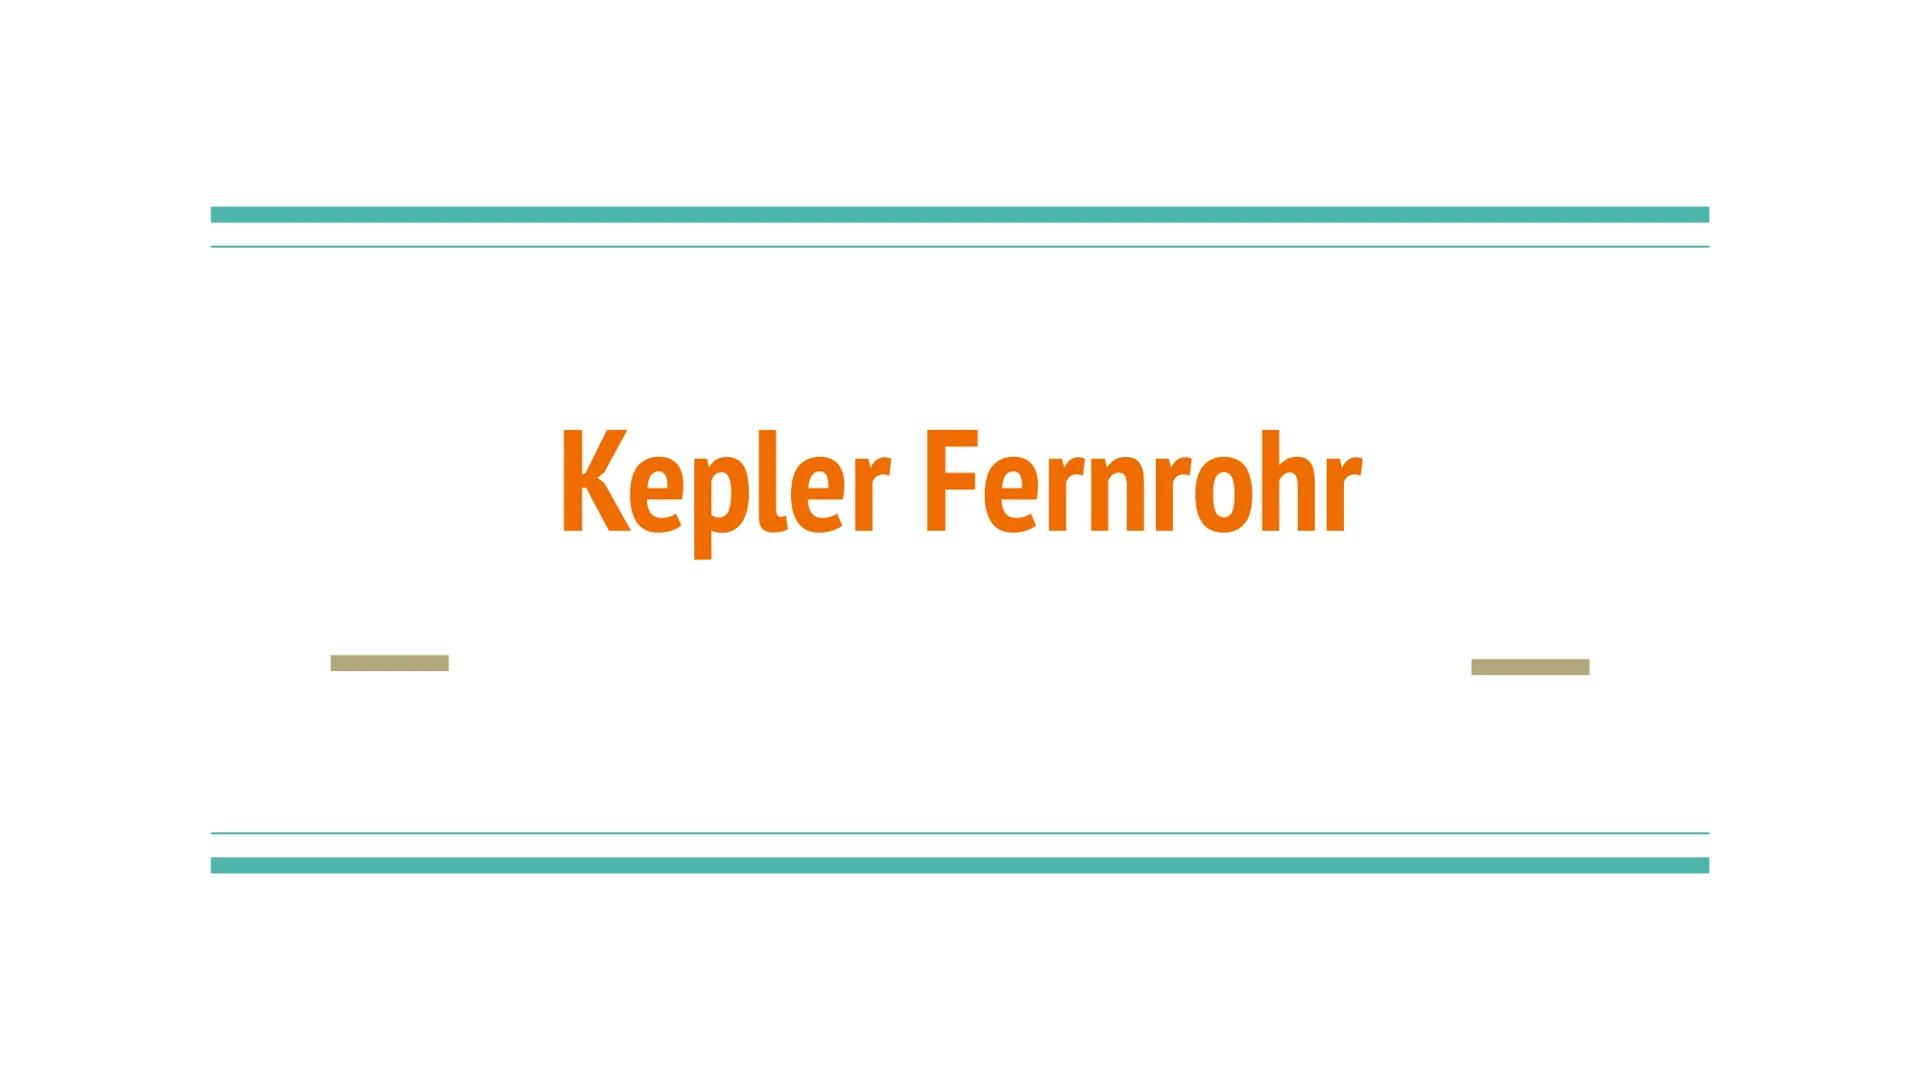 Kepler Fernrohr Themen
Das Fernrohr
Für was benutzt man ein Fernrohr?
Fernrohr und Fernglas
Das Kepler-Fernrohr(Aufbau)
Wer ist Johannes Kep